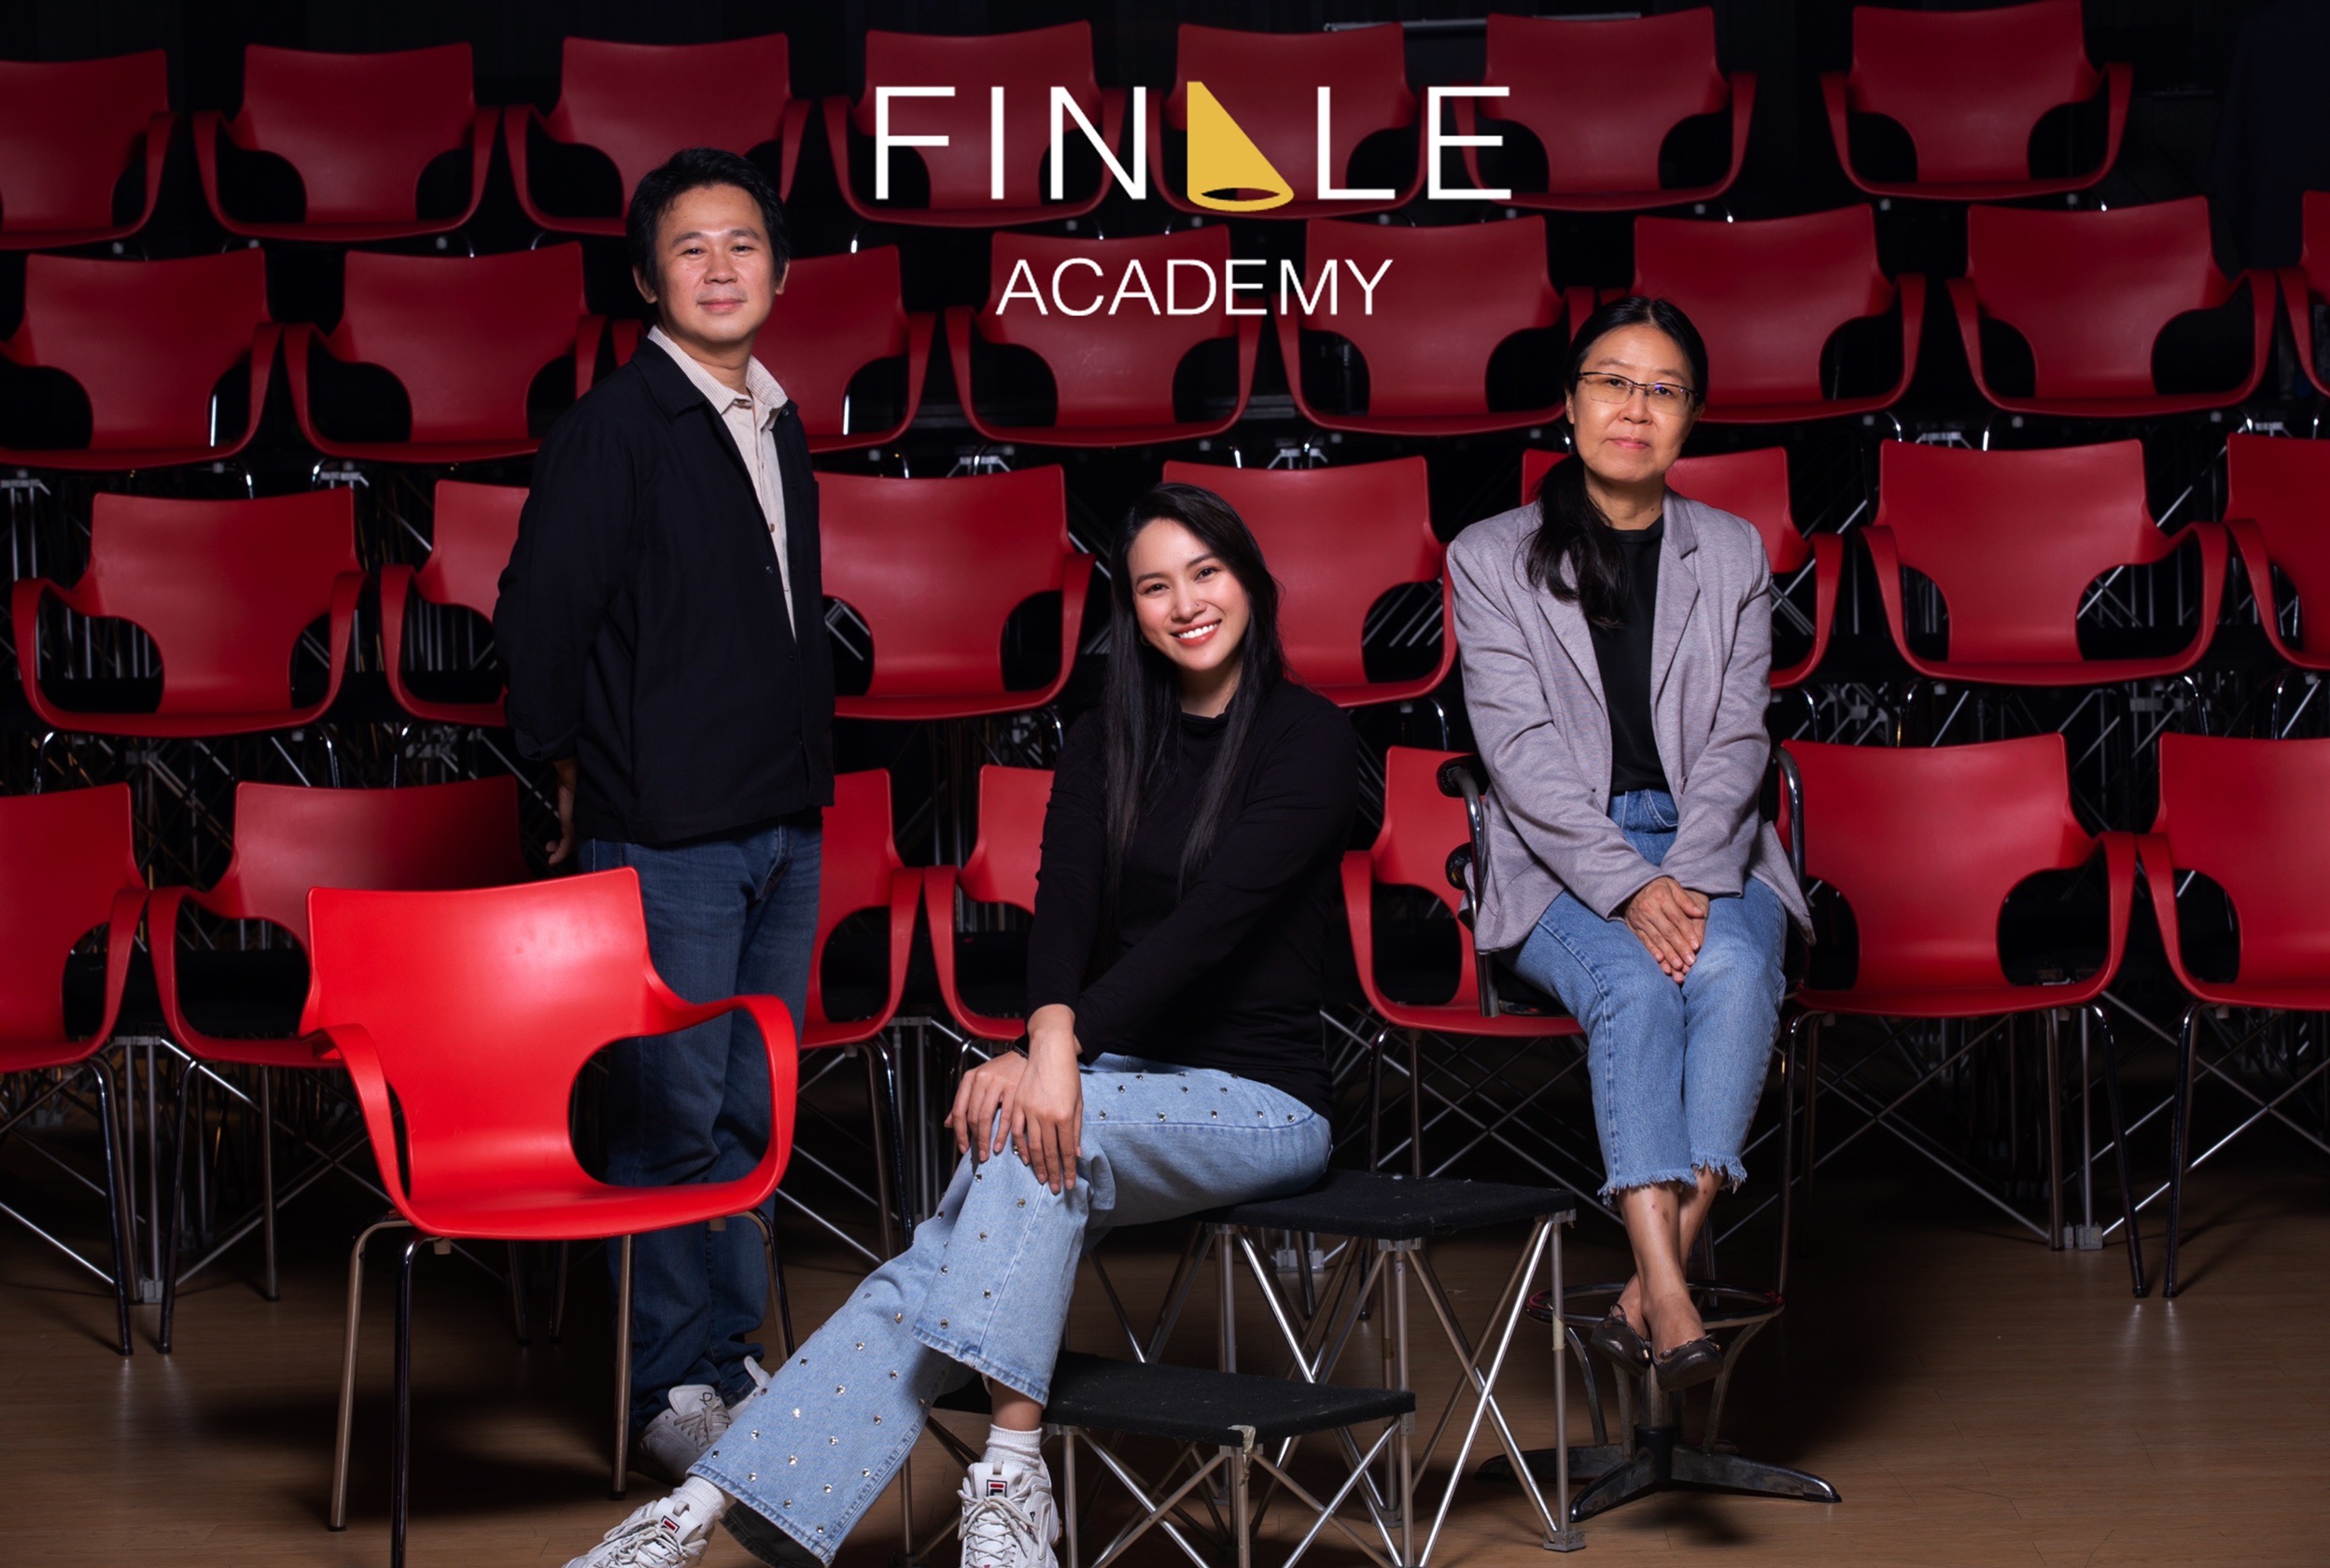 เปิดแล้ว! โรงเรียนสอนการแสดงหลักสูตรมืออาชีพ “Finale Academy”